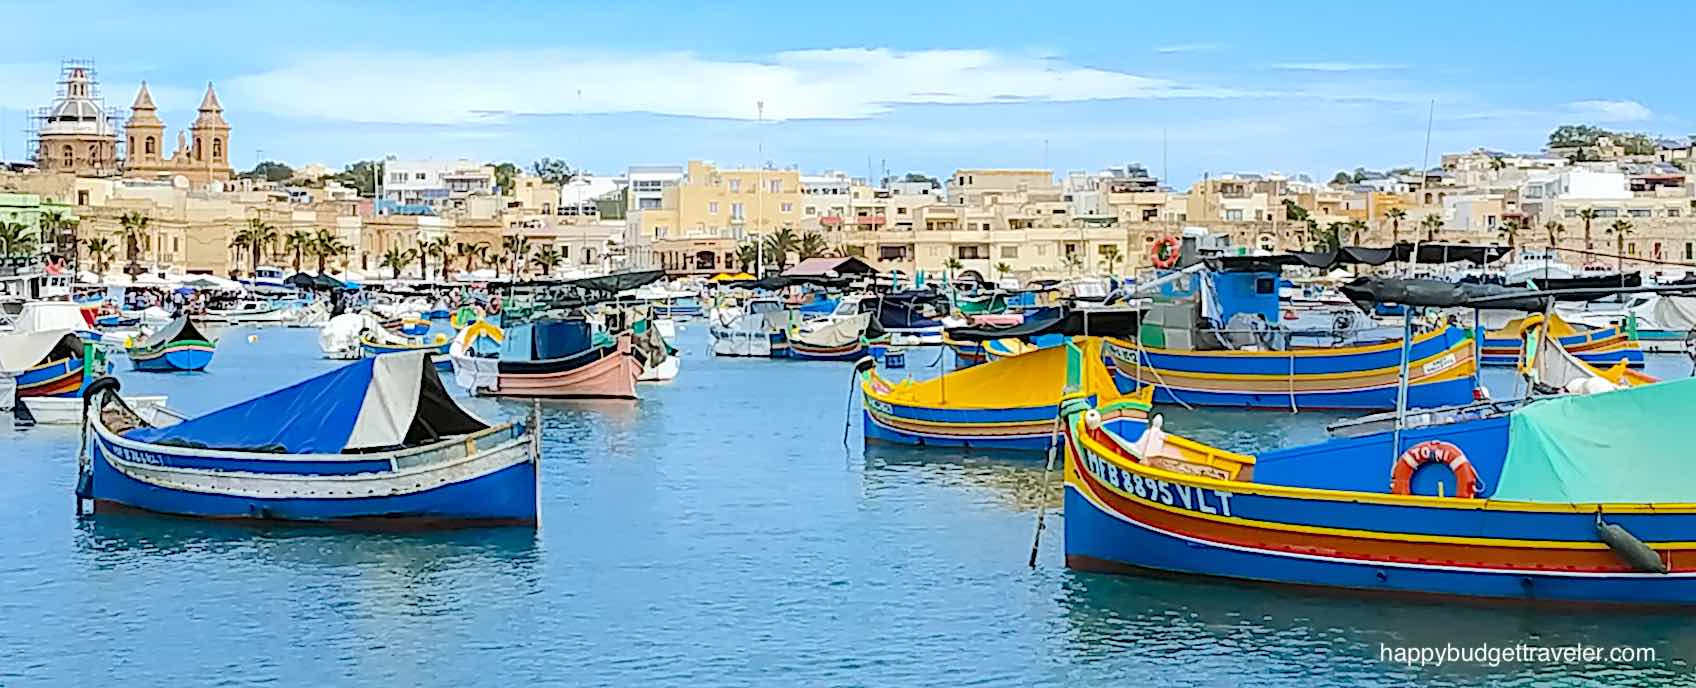 Picture of Marsaxlokk Harbor, Malta